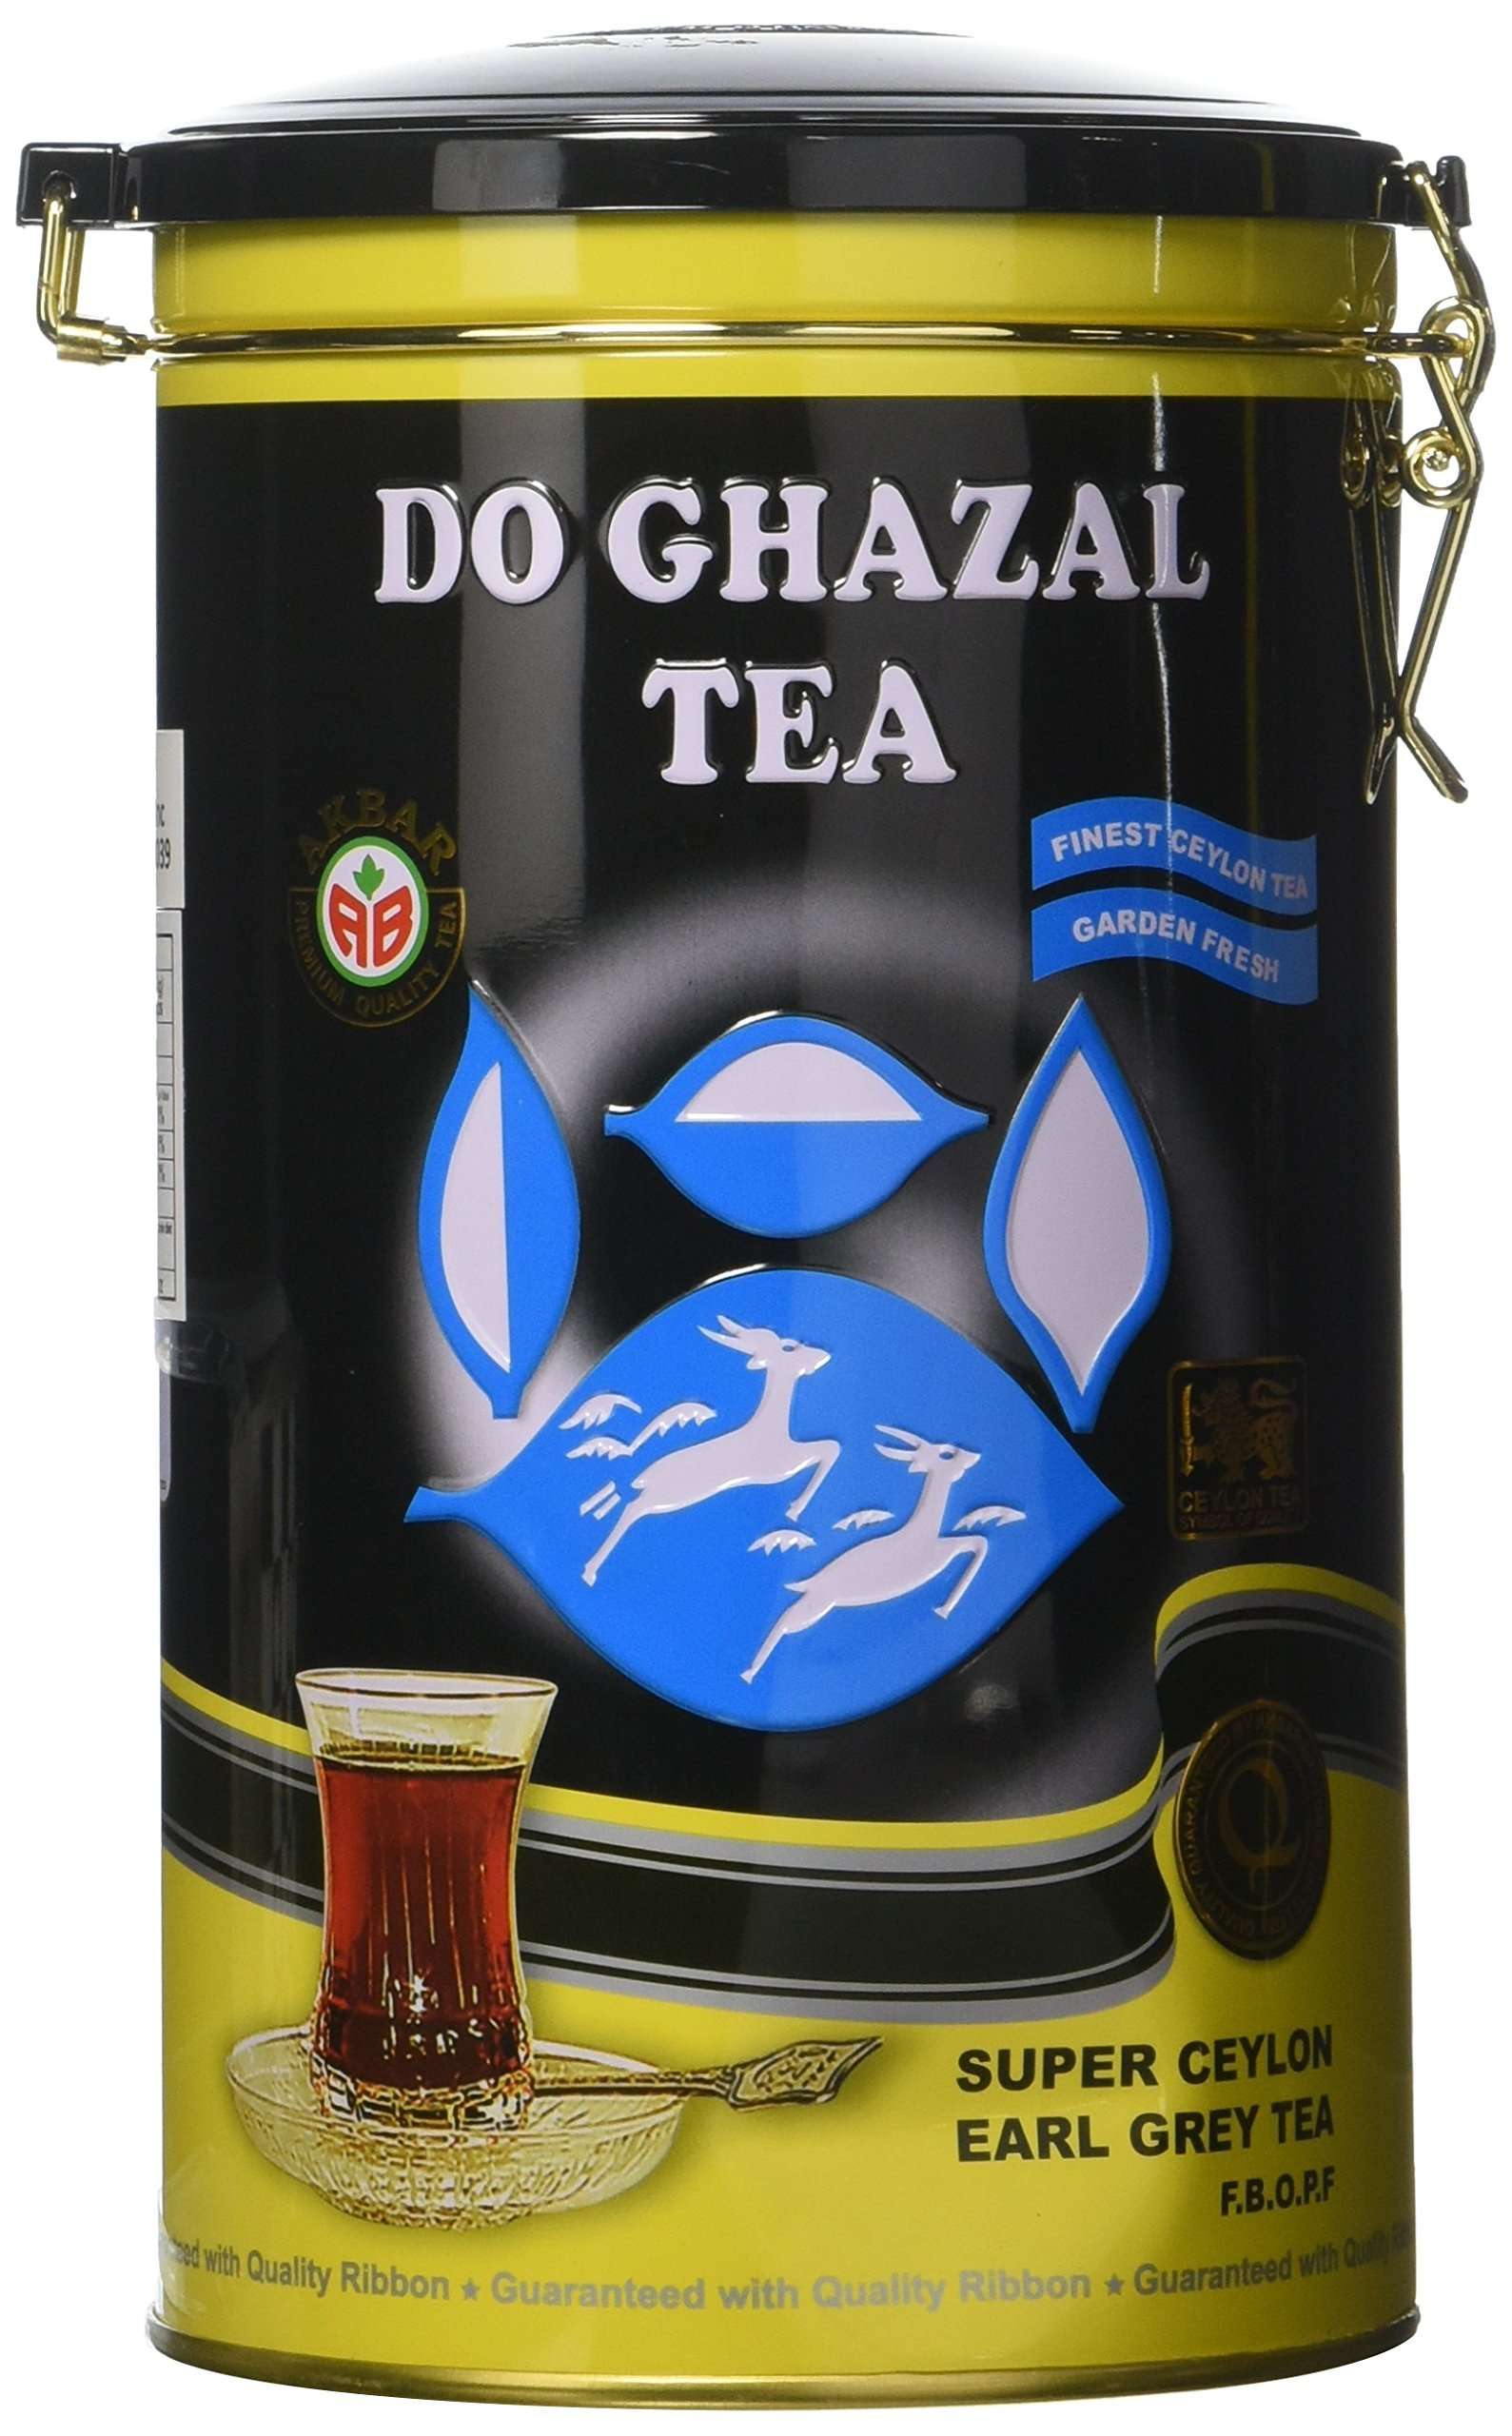 Do Ghazal Tea Ceylon Earl Grey, 500g